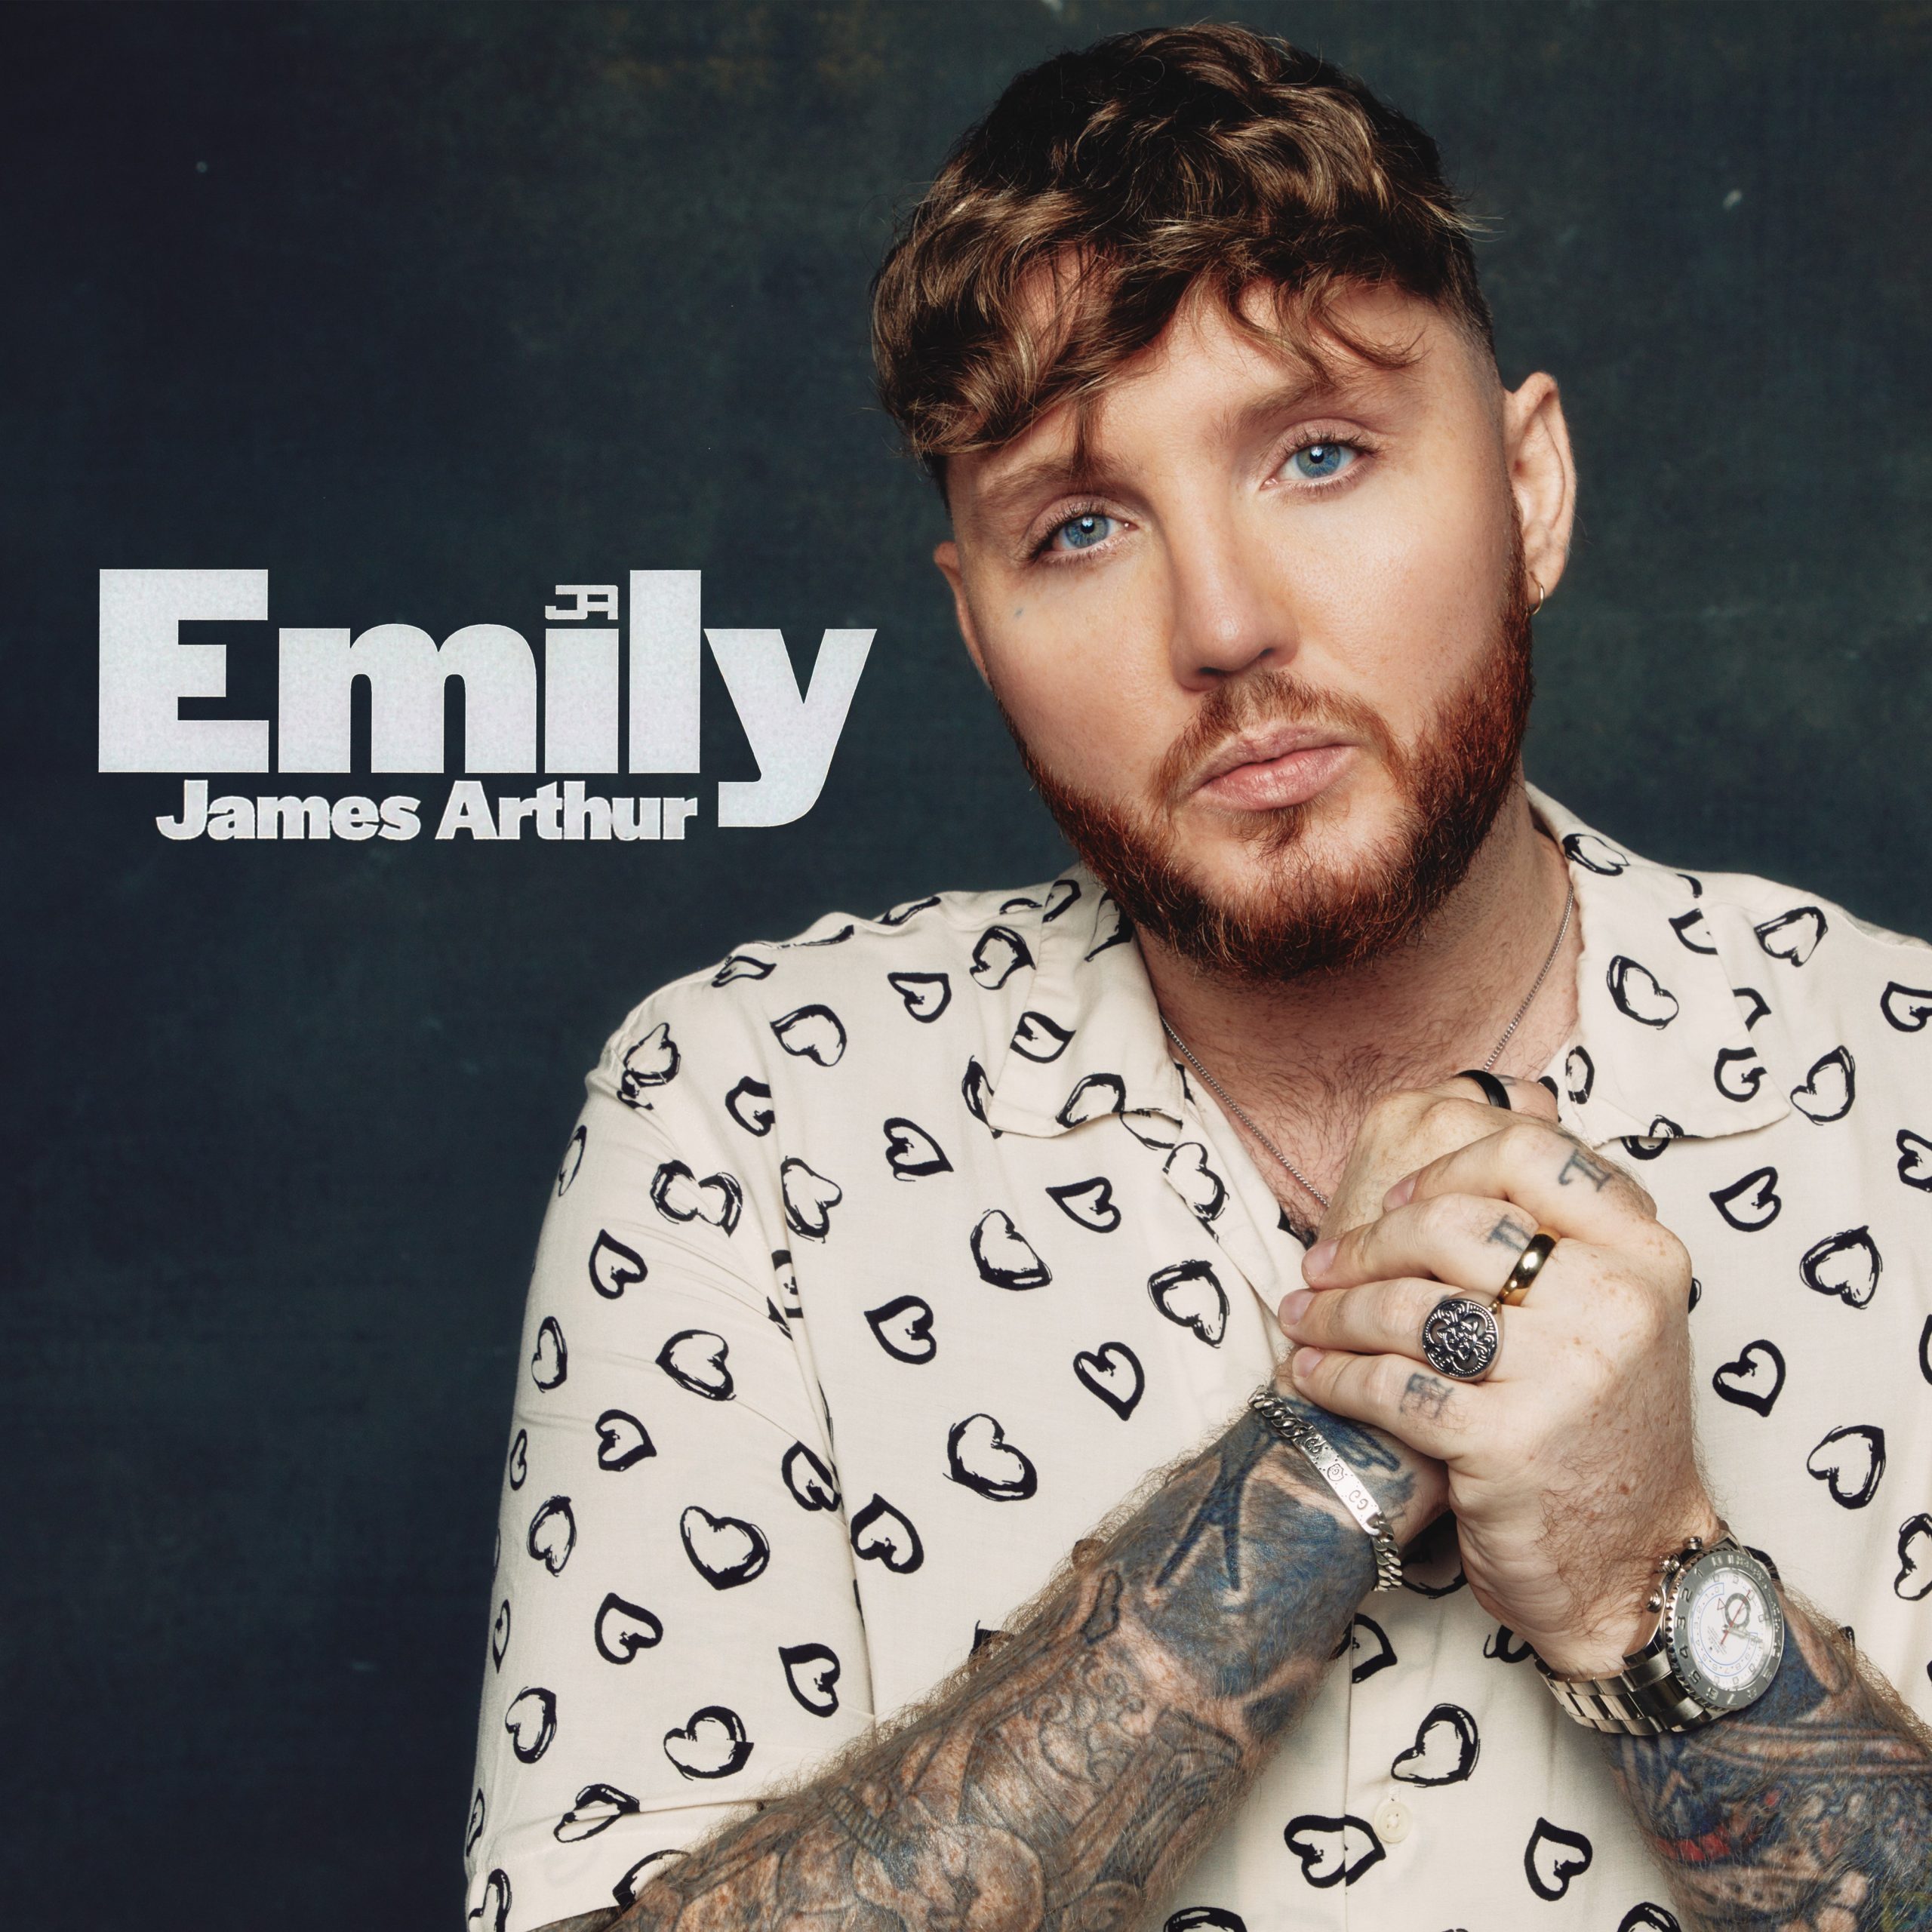 James Arthur presentó el video de su canción “Emily”